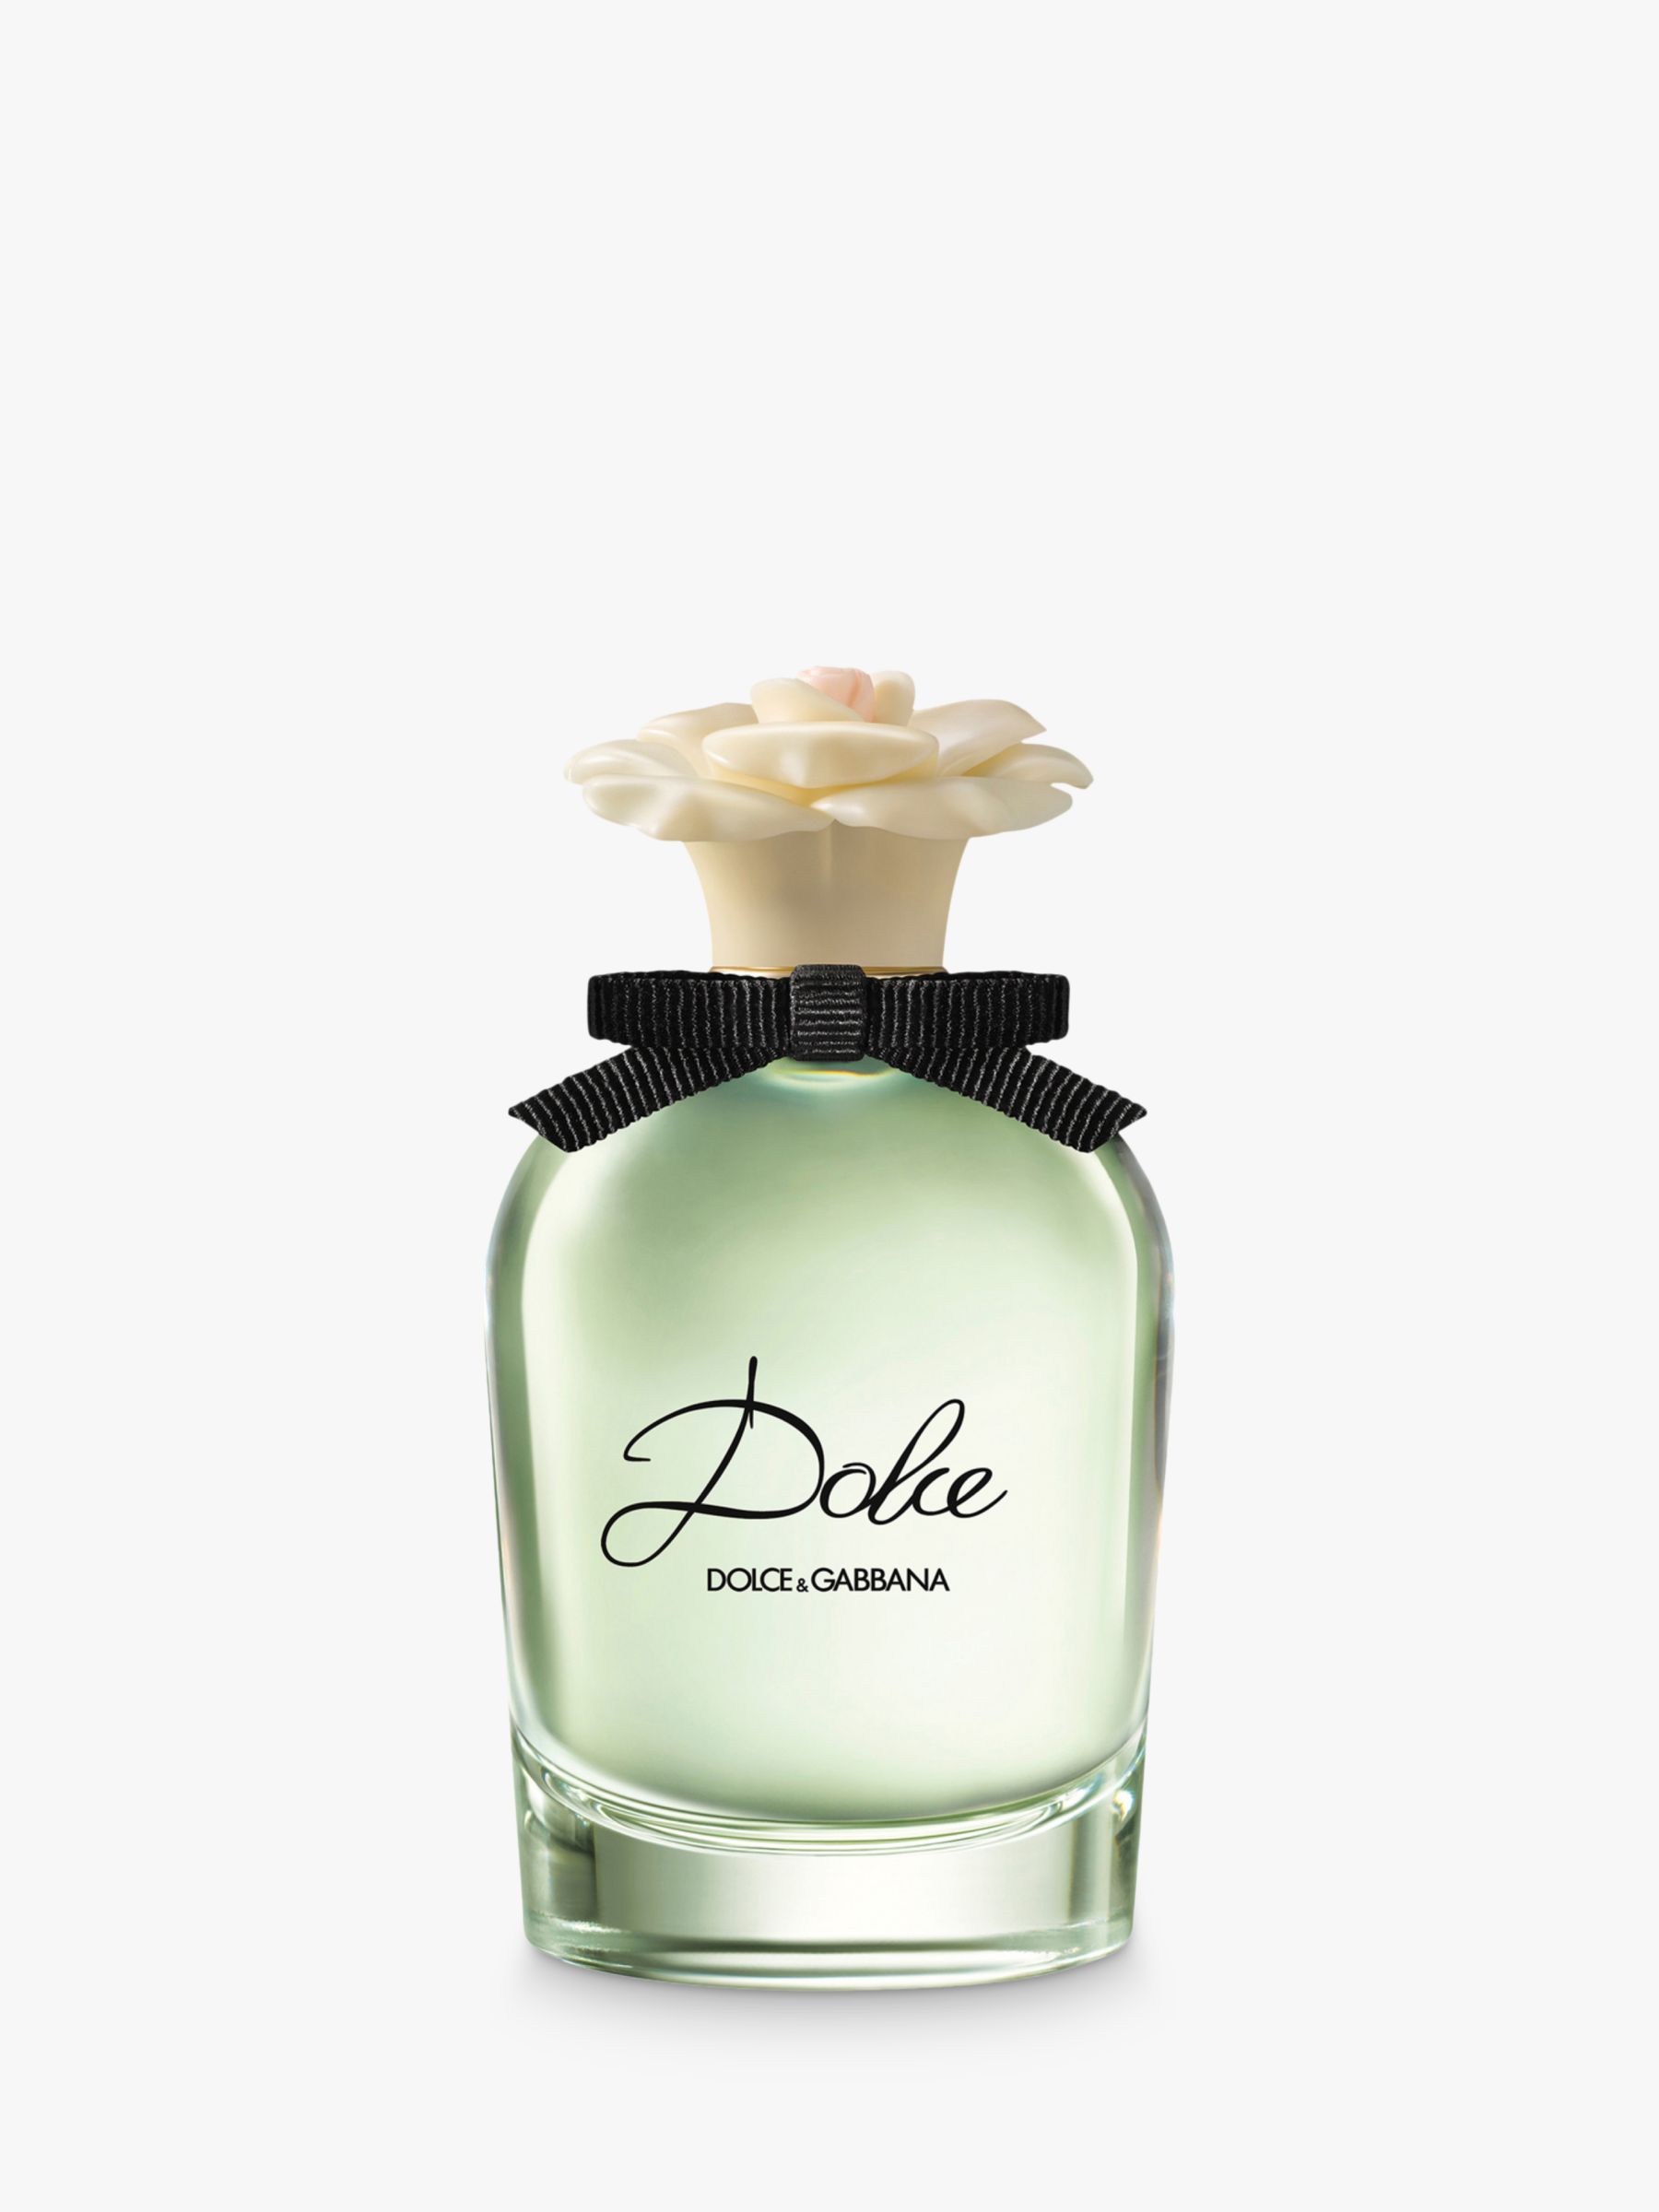 Dolce & Gabbana Dolce Eau de Parfum, 75ml 1